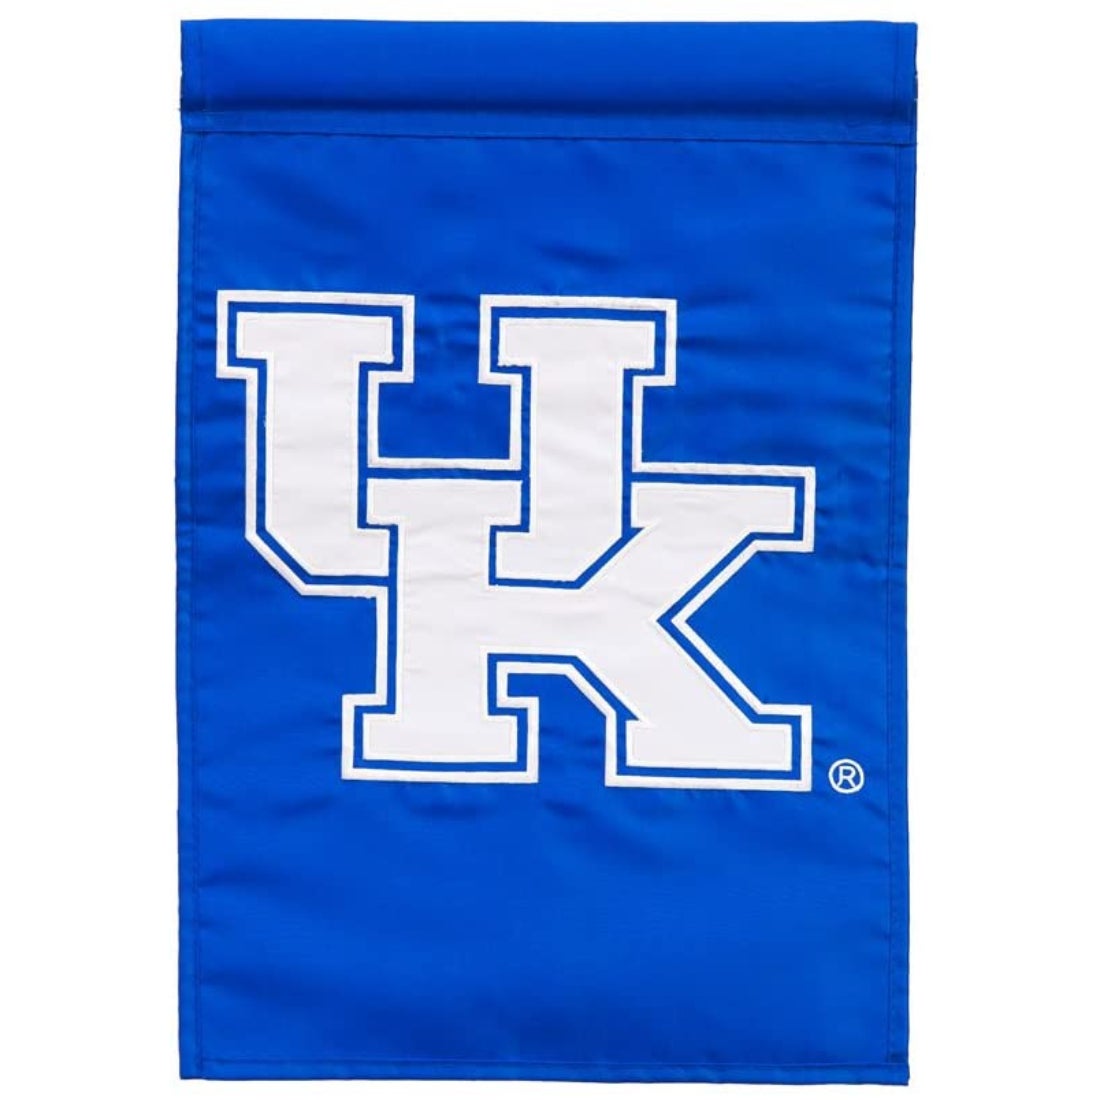 Team Sports America Kentucky Wildcats Applique Garden Flag, 12.5 x 18 inches